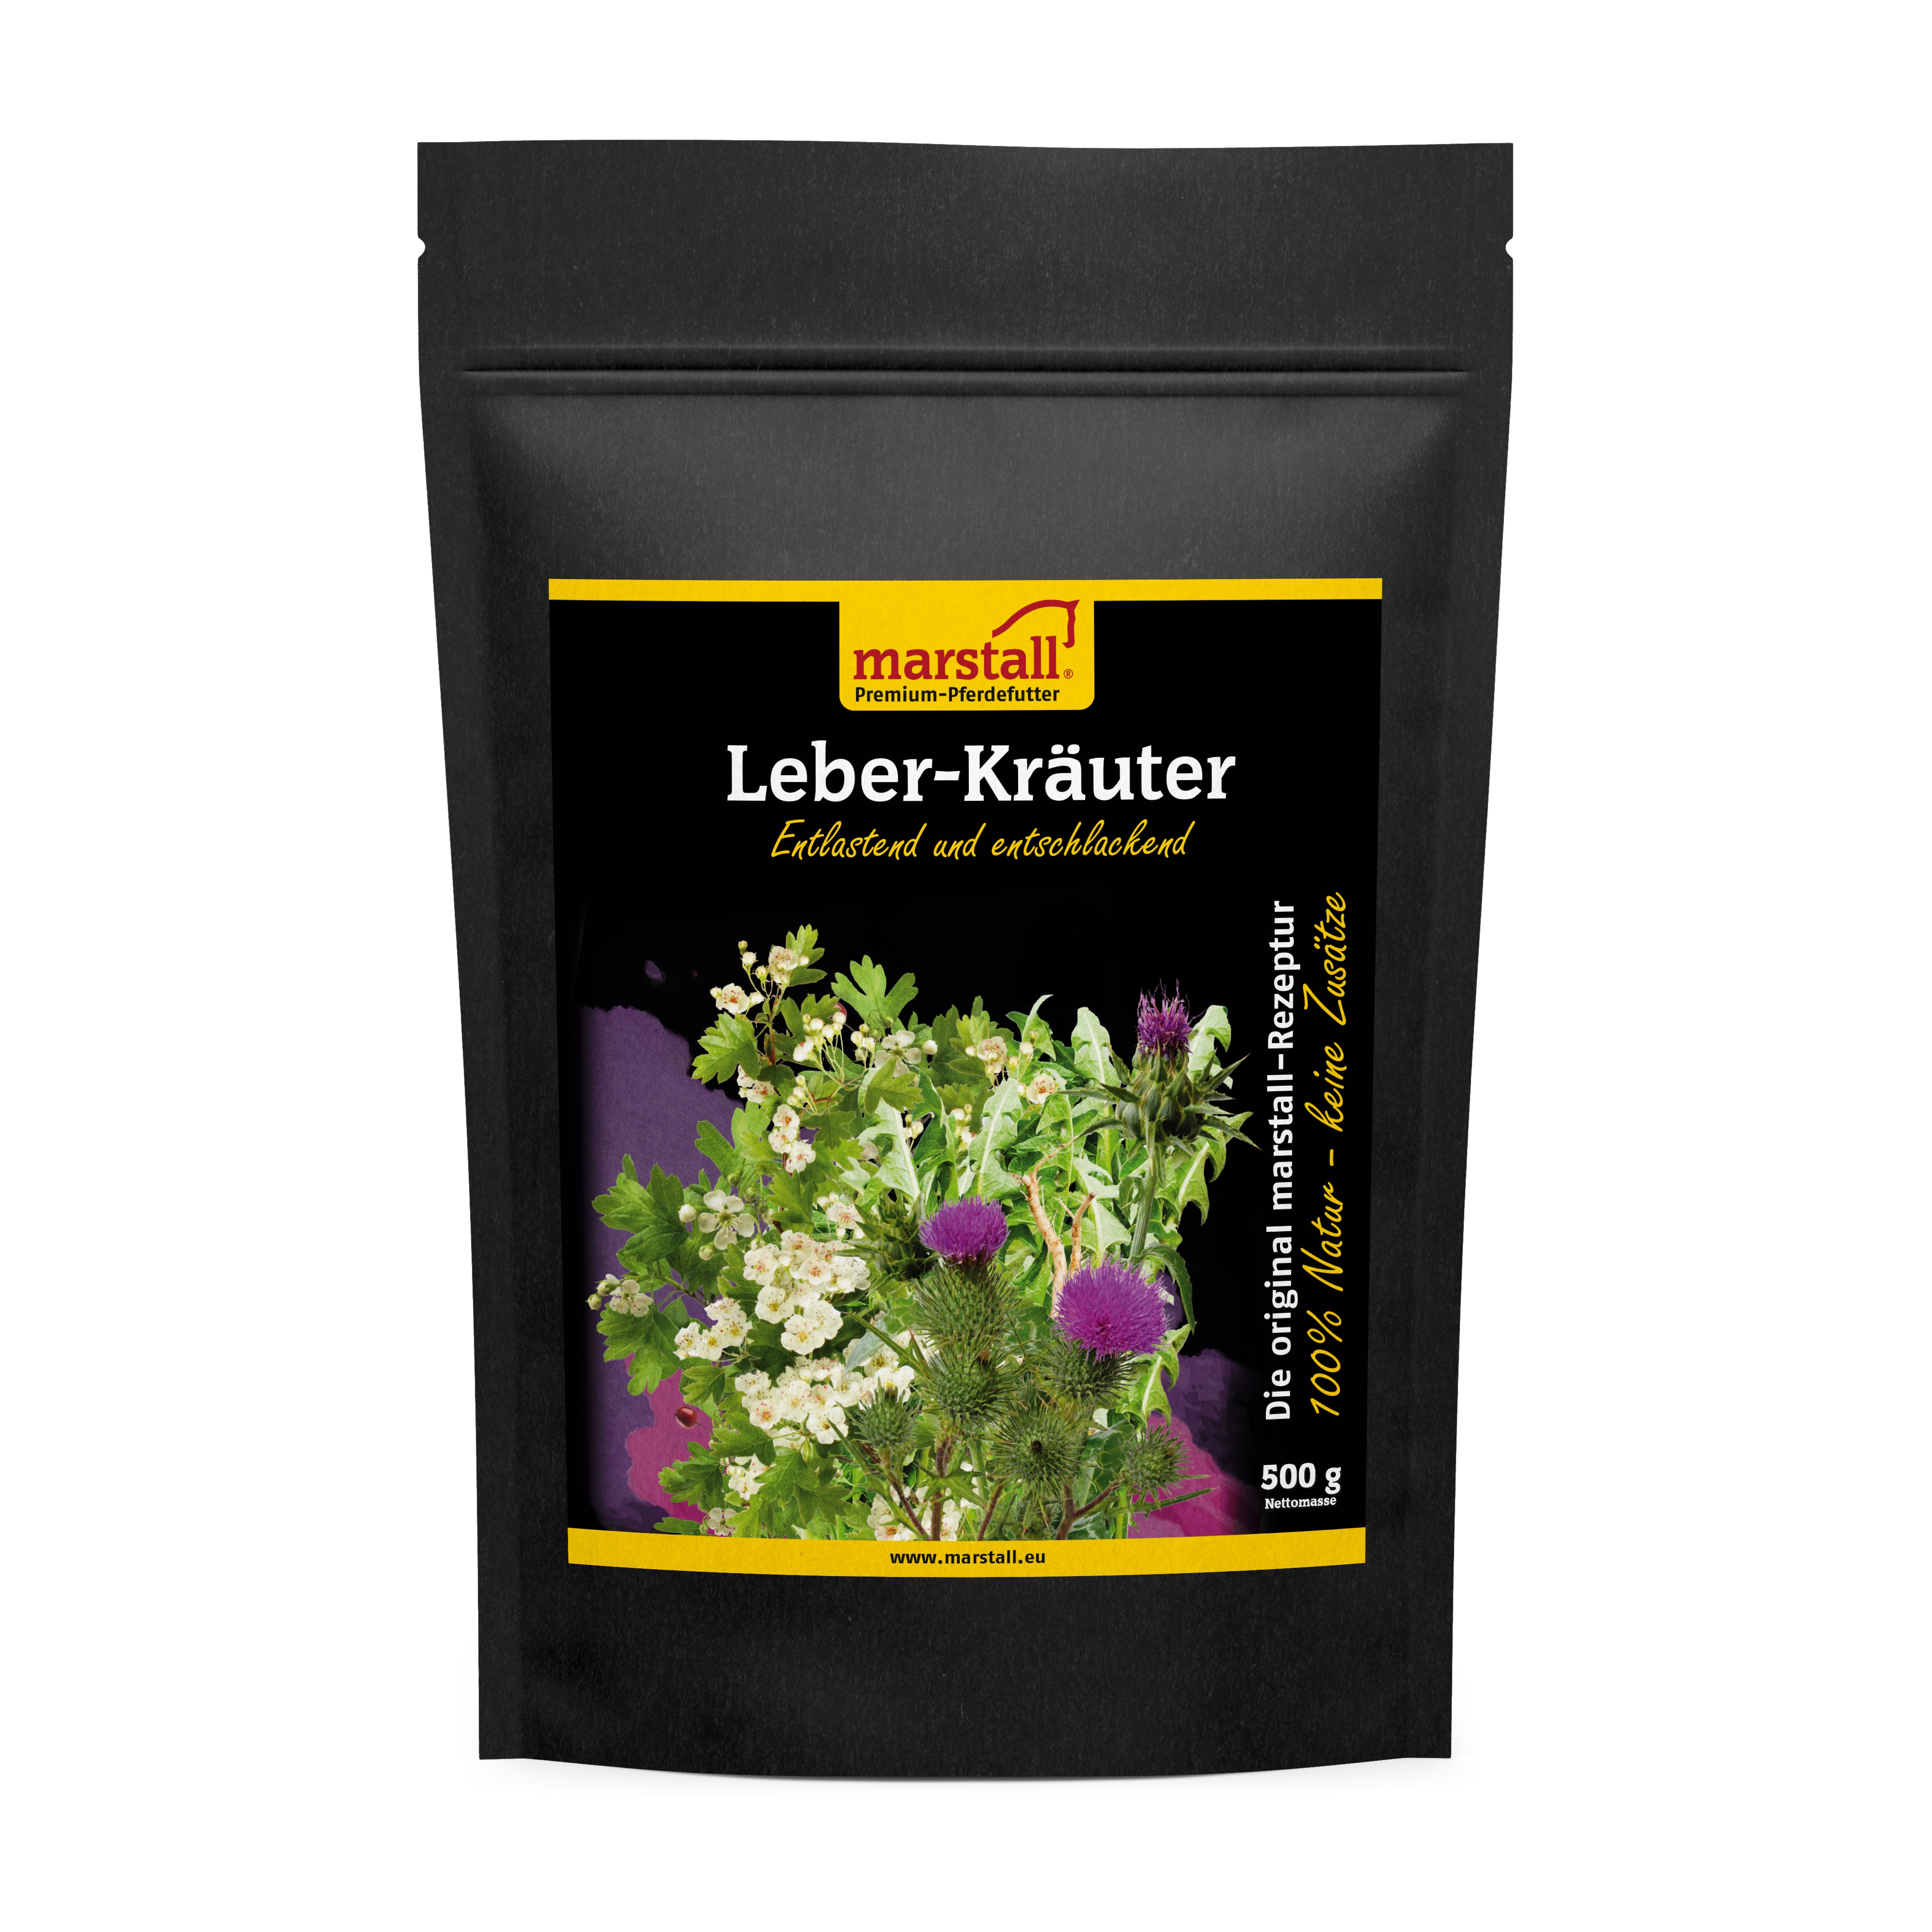 Marstall Leber-Kräuter 500 g